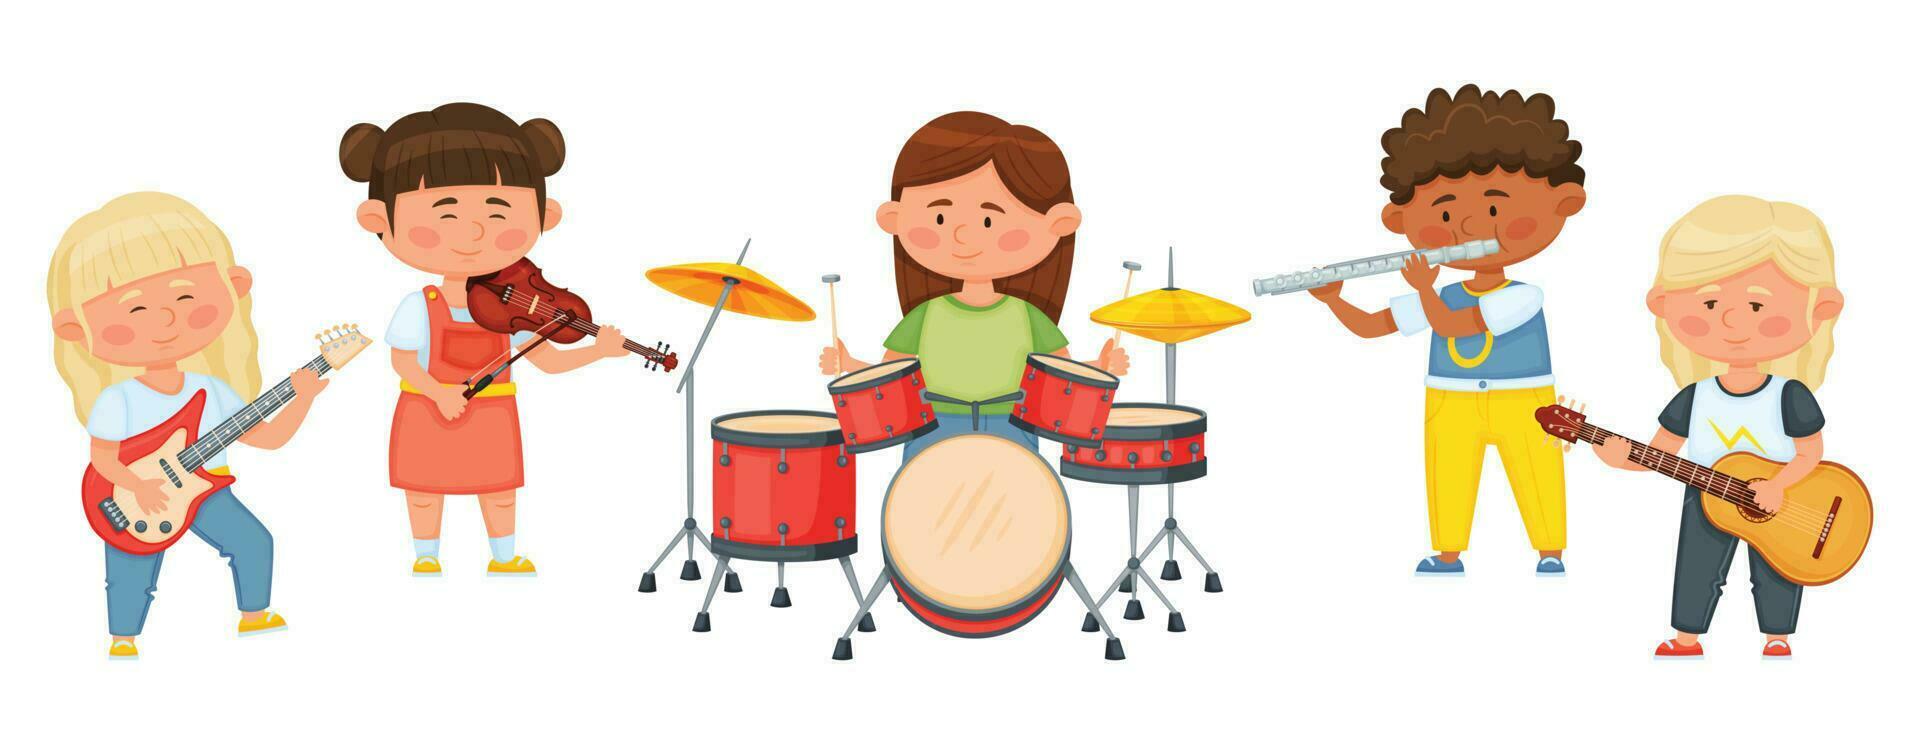 barn musik band, tecknad serie barn spelar musikalisk instrument tillsammans. barn musiker spelar på fiol, gitarr, trummor vektor illustration